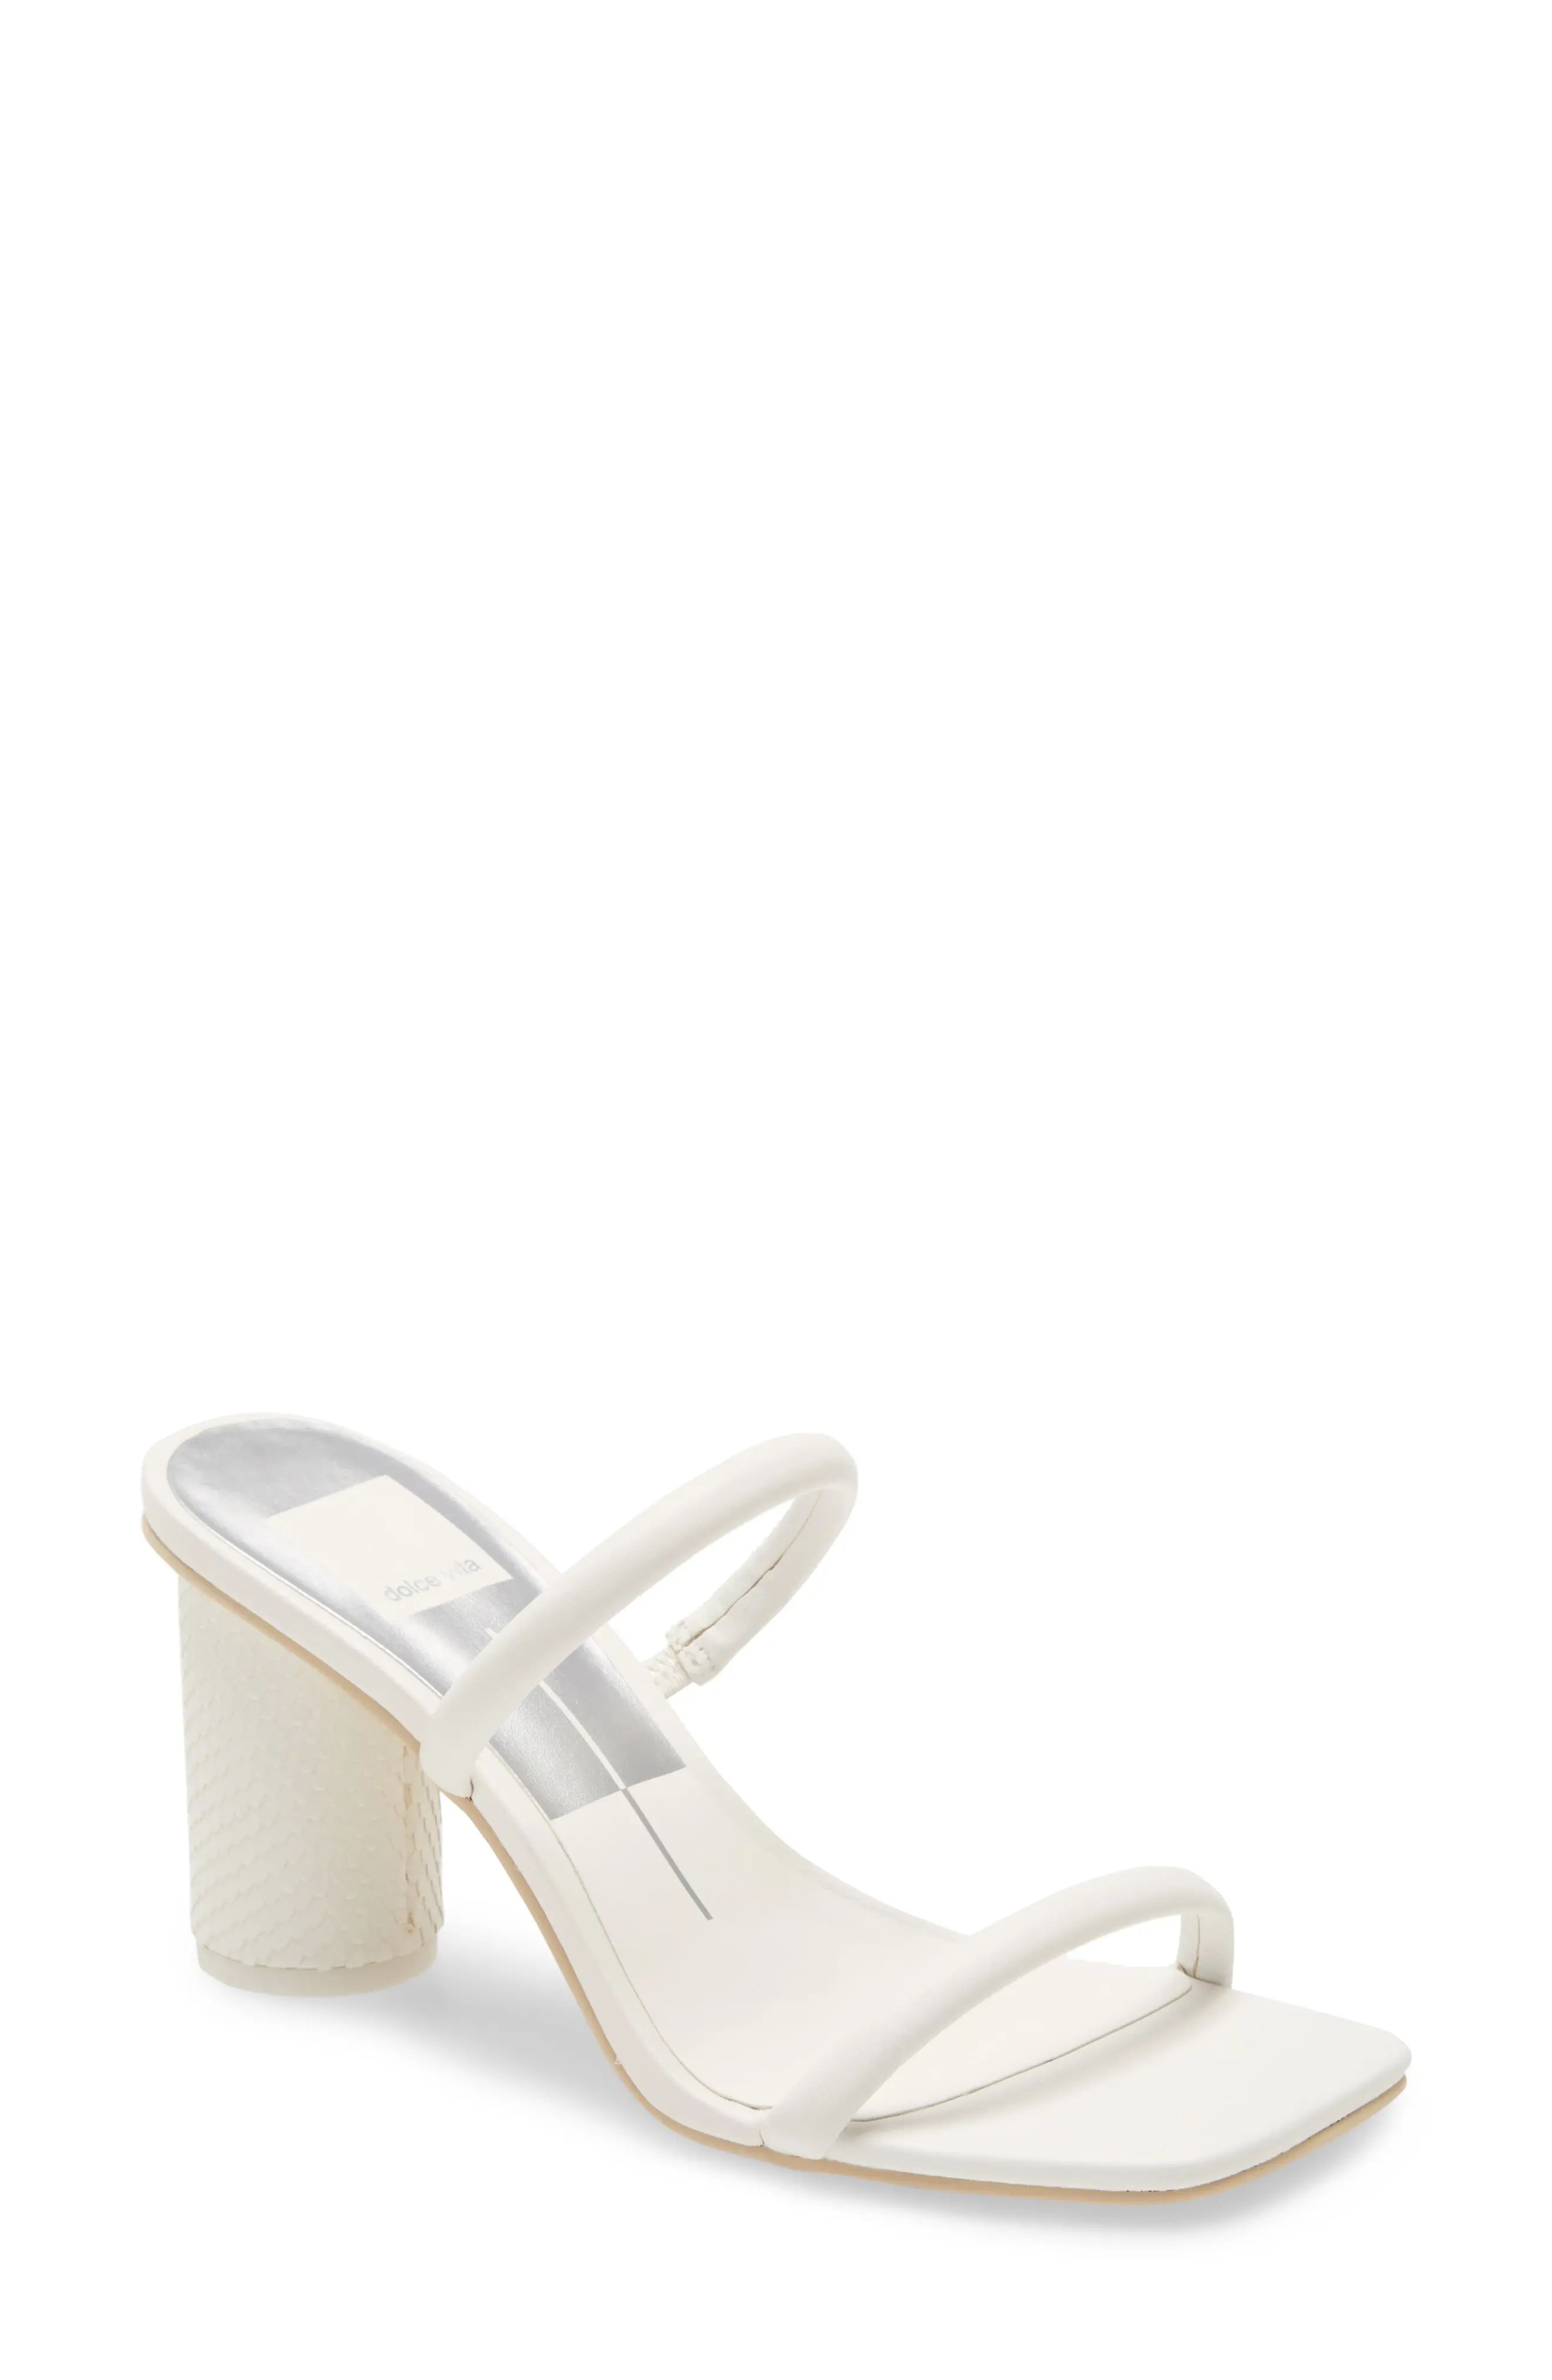 Women's Dolce Vita Noles City Slide Sandal, Size 7.5 M - White | Nordstrom